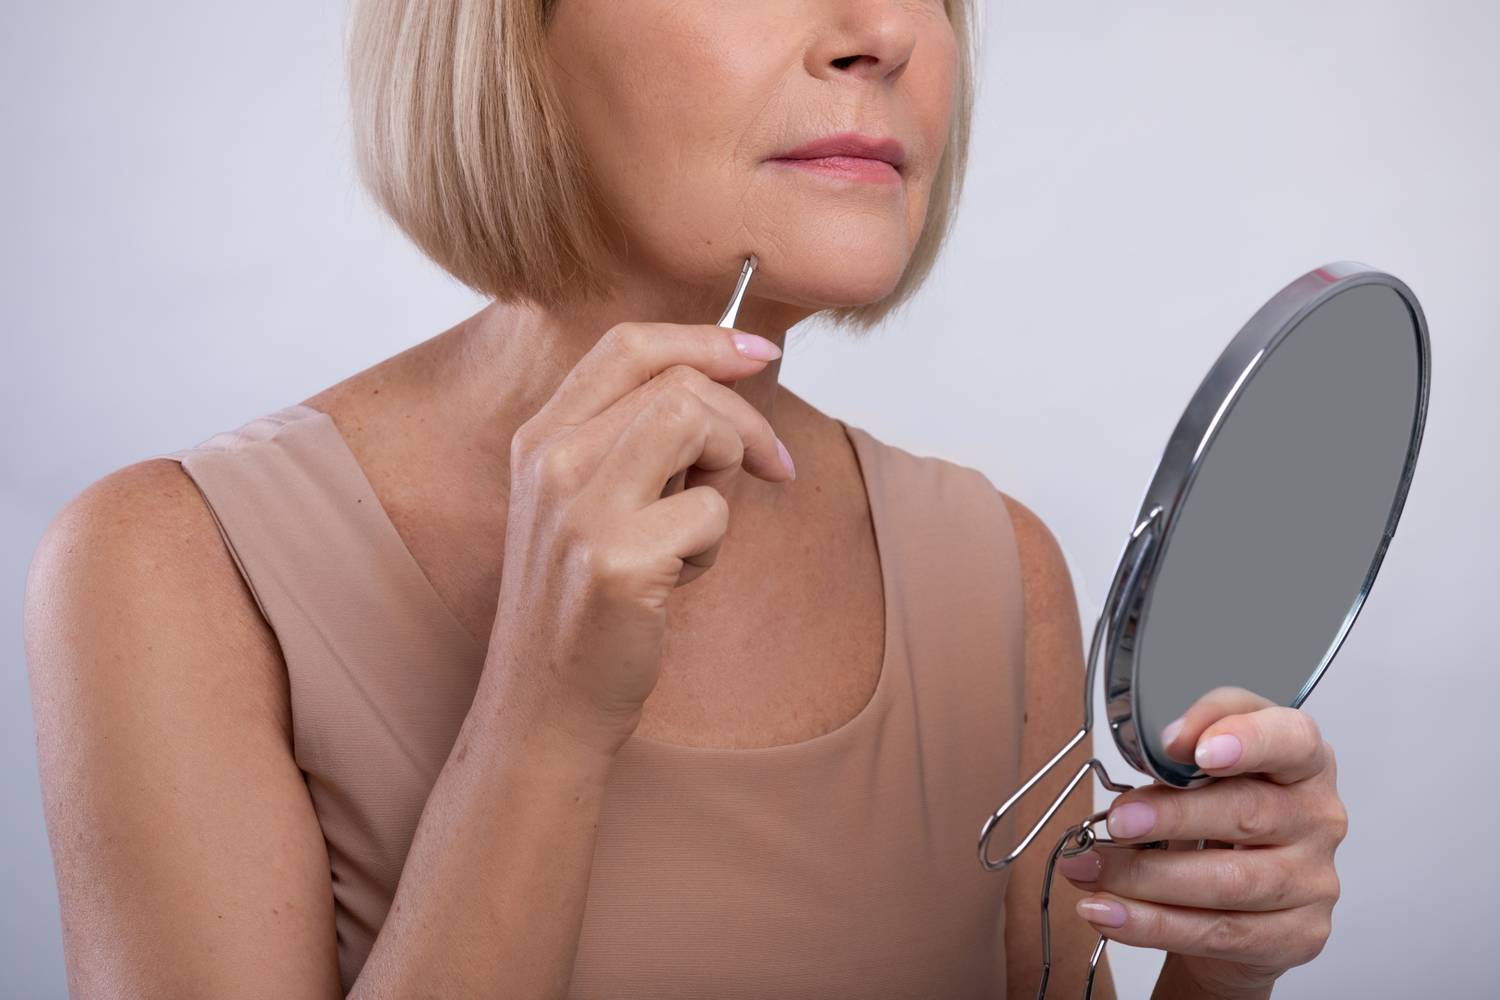 Az állon megjelenő erős szőrszálak kialakulhatnak a menopauza során, de a PCOS, az inzulinrezisztencia, illetve a gyakran ezekkel járó magas tesztoszteronszint járhat hasonló következményekkel. A szőrösödés megjelenhet az ajkak fölött és a mellbimbó körül is.